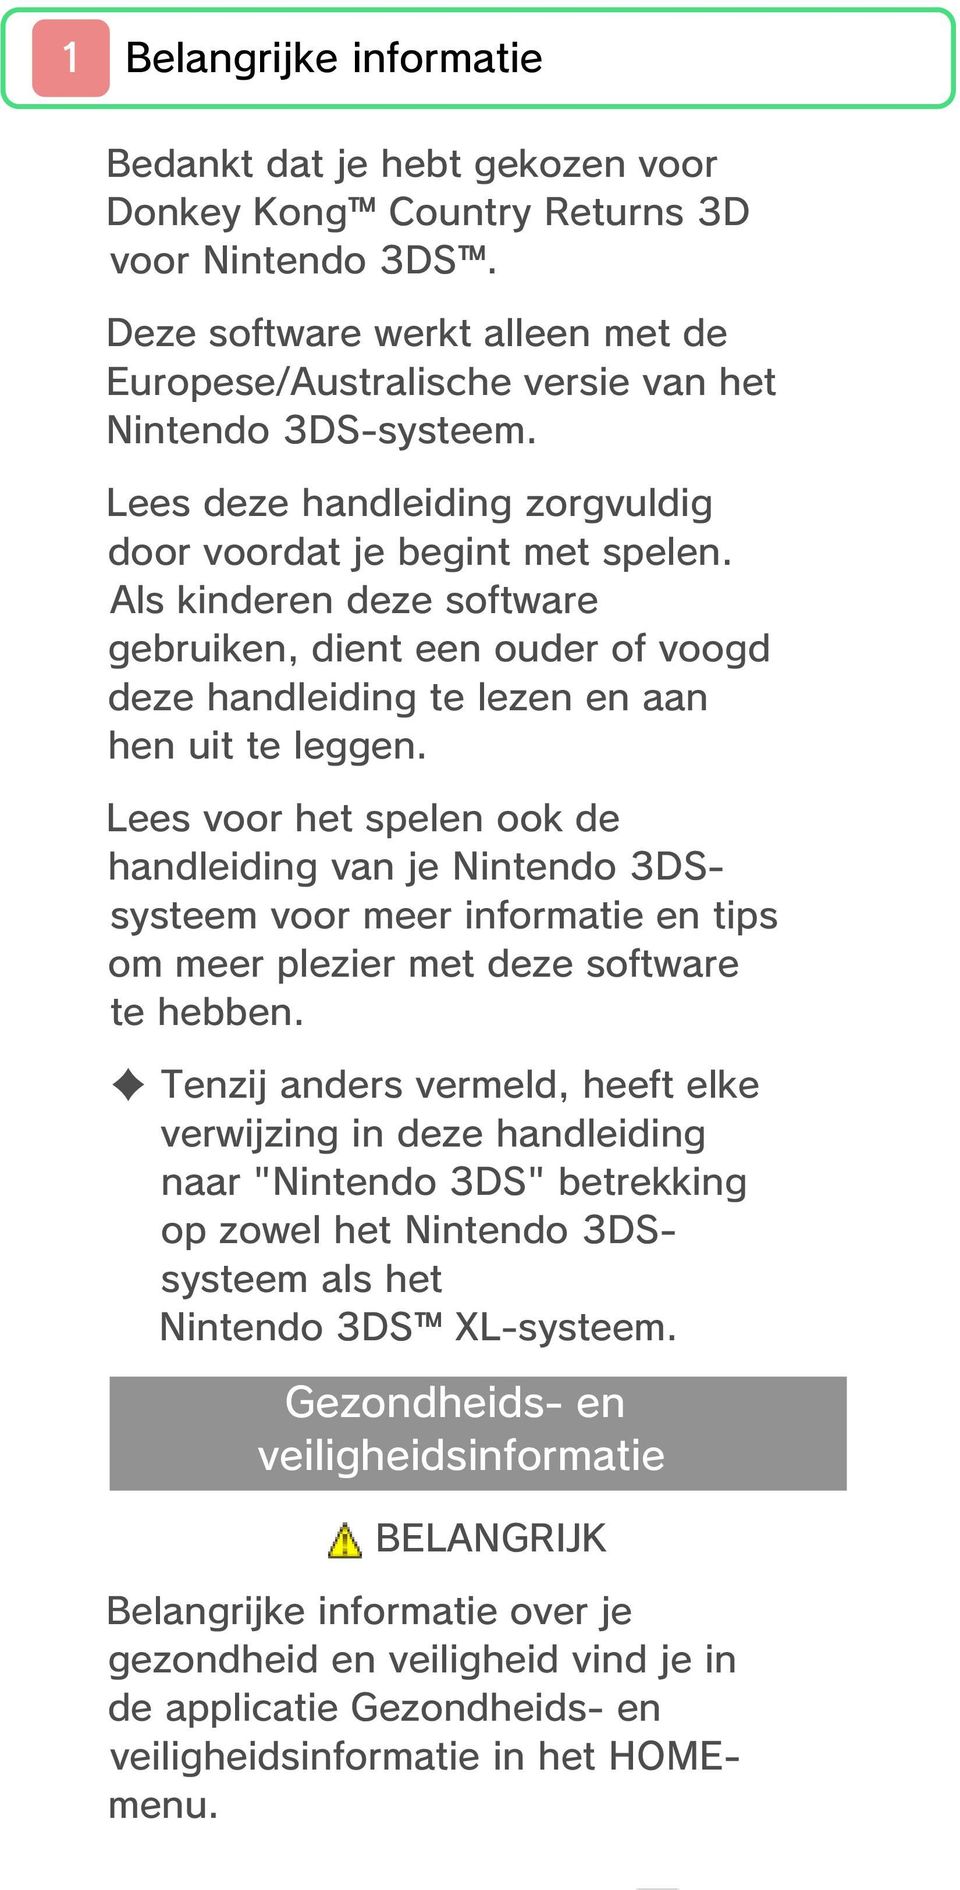 Lees voor het spelen ook de handleiding van je Nintendo 3DSsysteem voor meer informatie en tips om meer plezier met deze software te hebben.